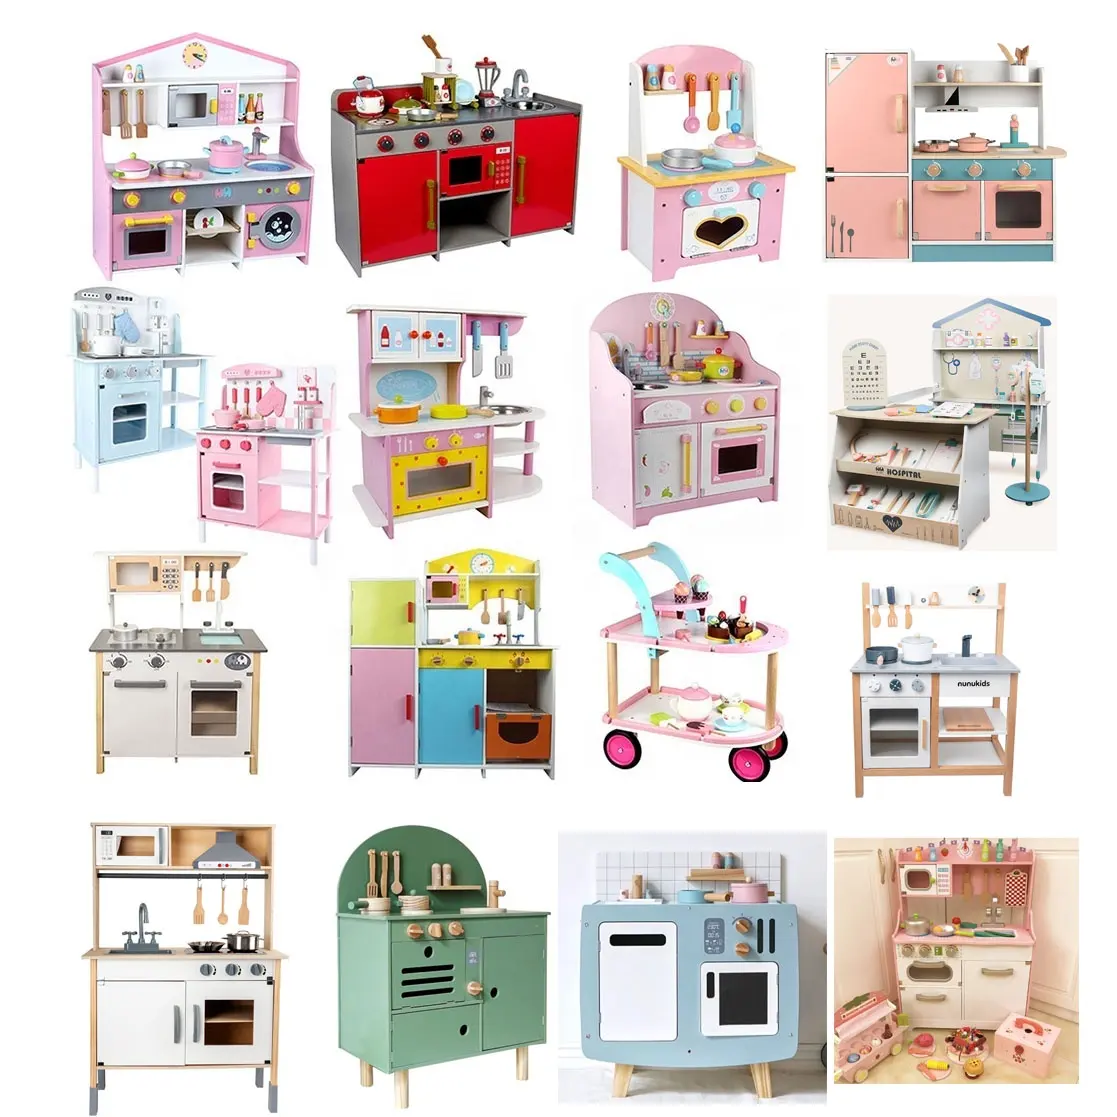 Set Mainan Dapur Kayu untuk Anak, Set Mainan Dapur Putih dan Merah Muda